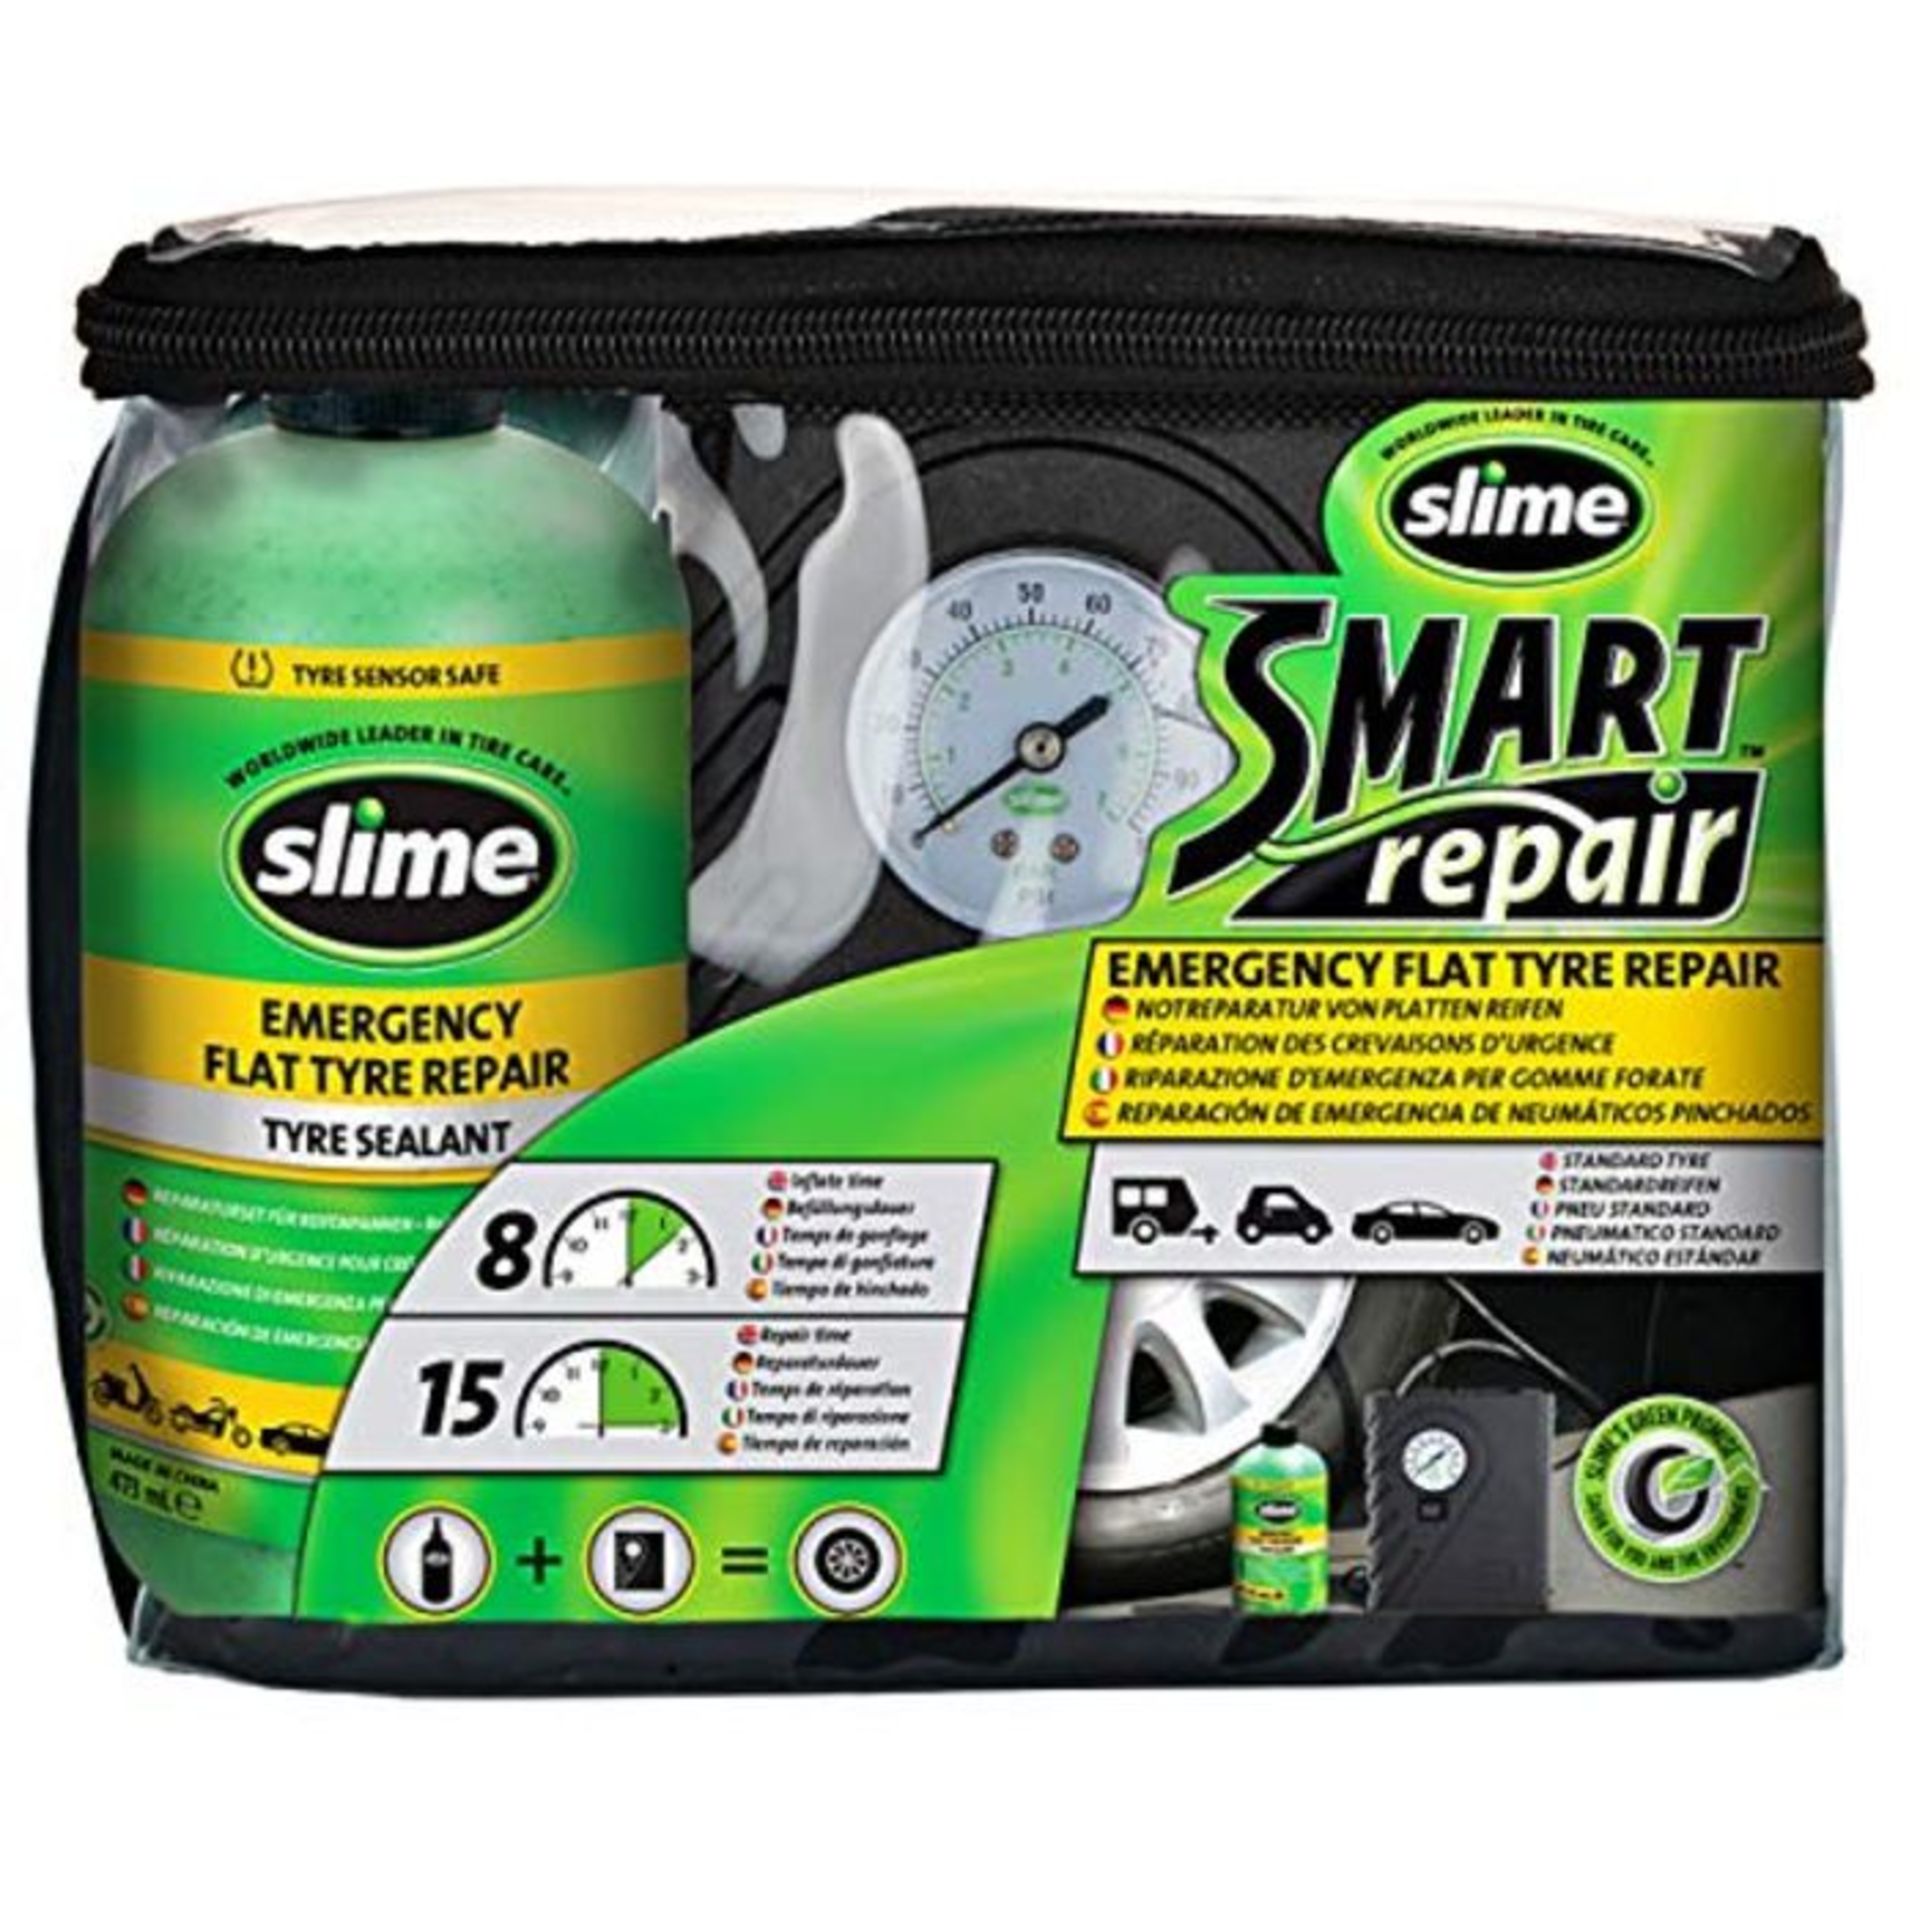 Slime CRK0305-IN Flat Tyre Puncture Repair, Smart Repair, Emergency Kit for Car Tyres,